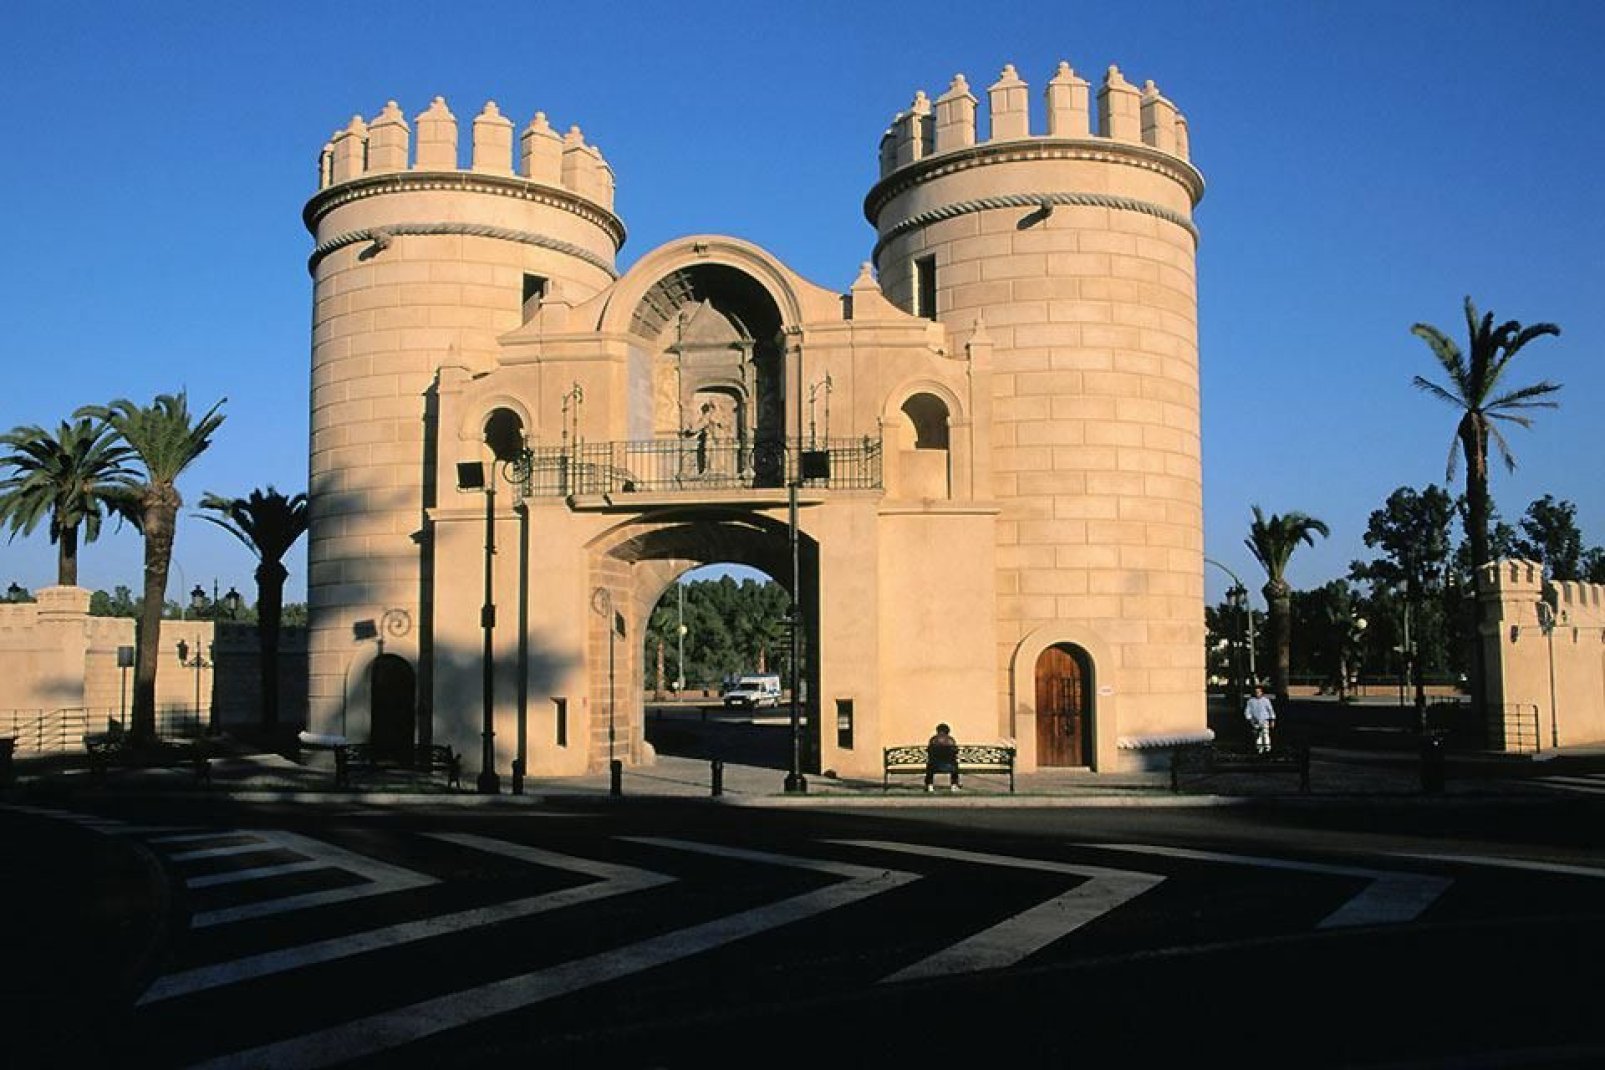 L'Alcázar, monumento risalente al XV secolo, domina la città di Zafra, soprannominata "la Piccola Siviglia".